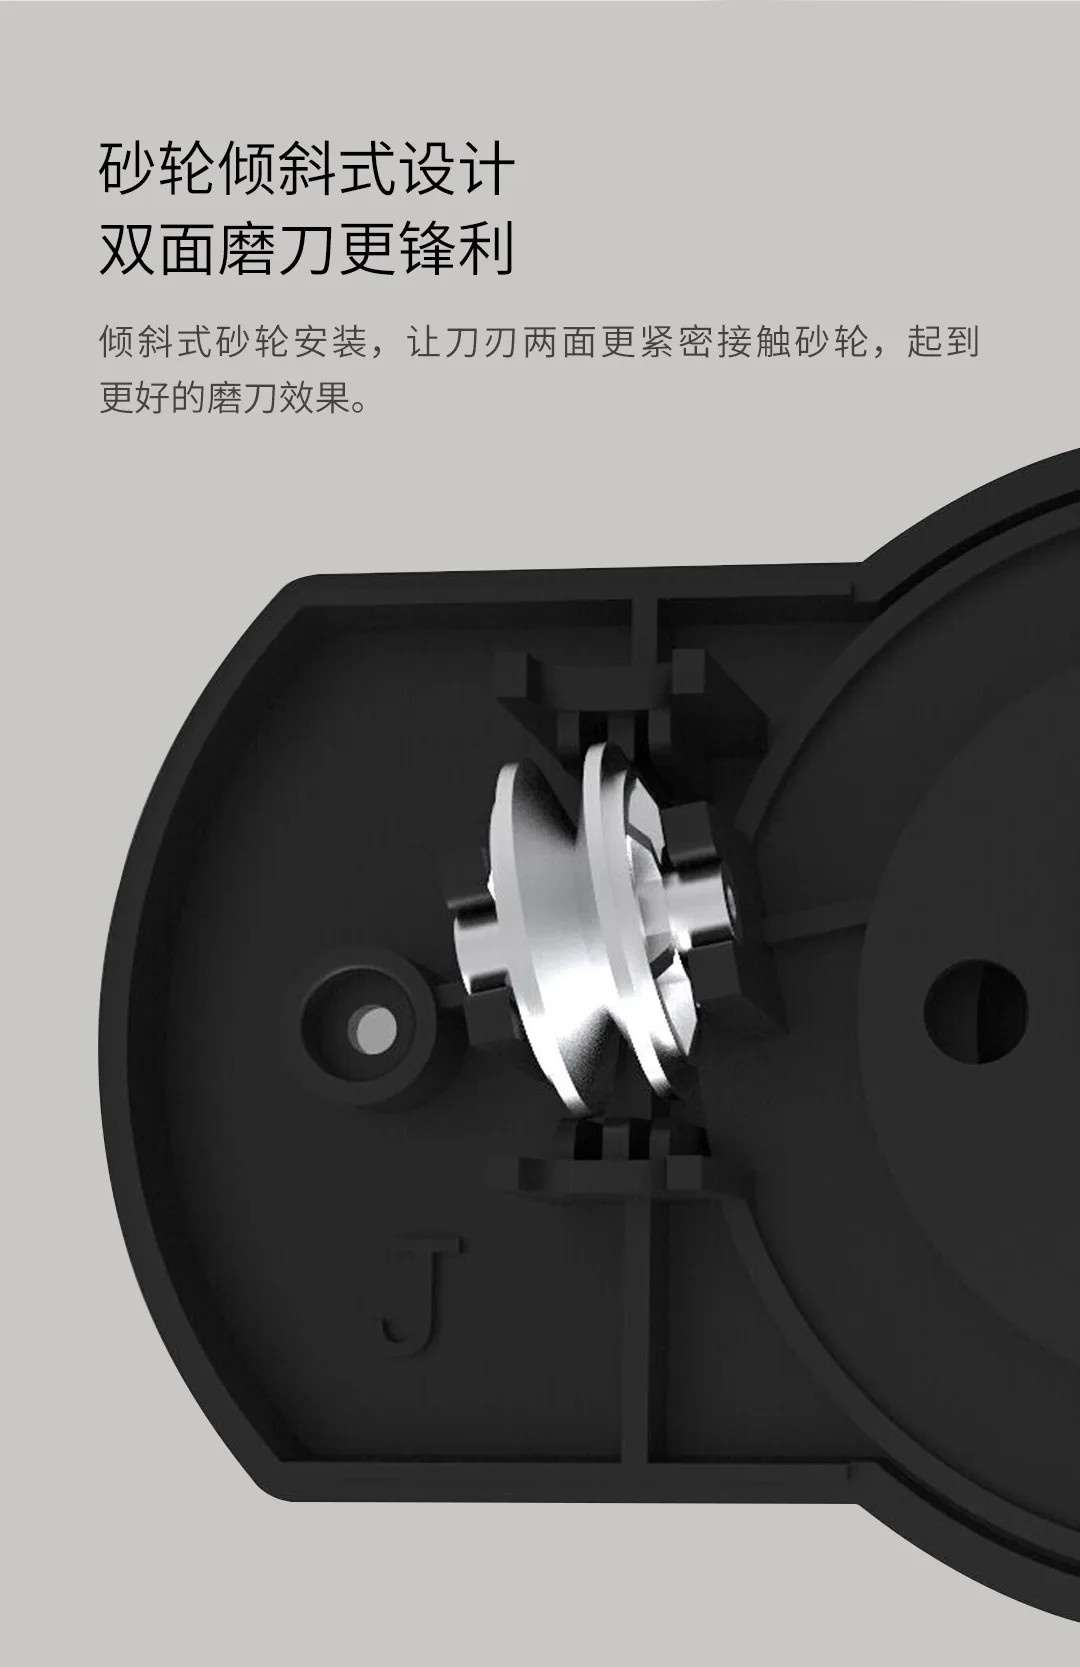 Xiaomi sharp ener Одноручное резкое покрытие Грубое шлифование мелкое шлифование и фиксация с присоской